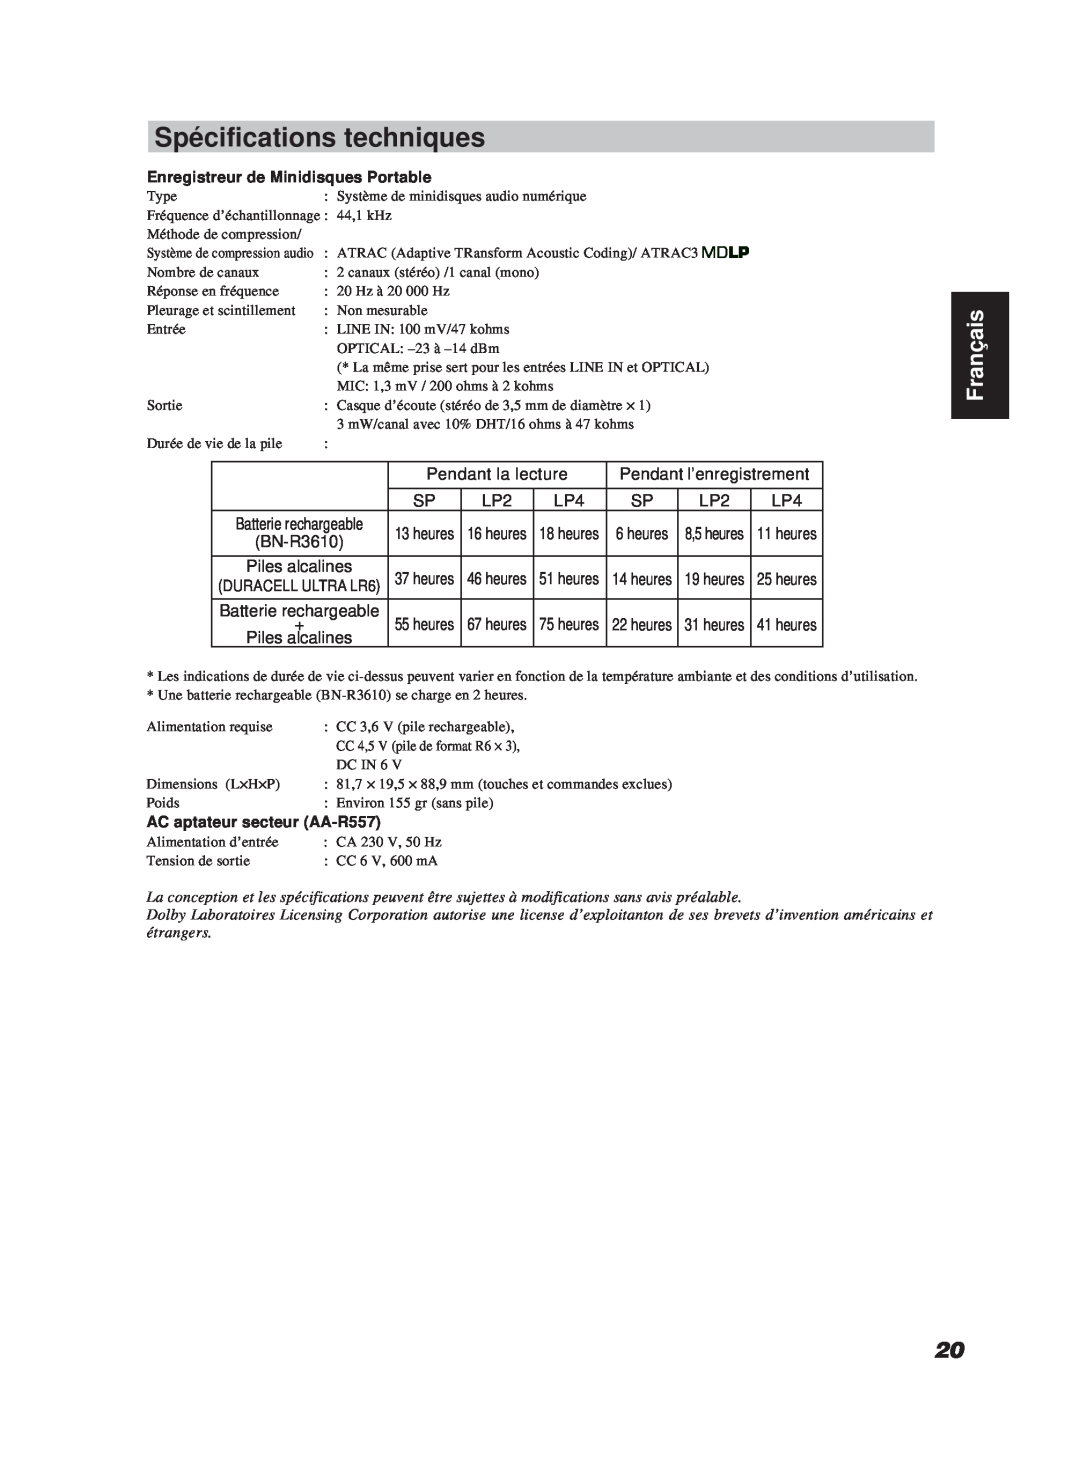 JVC XM-R700SL manual Spécifications techniques, Français, BN-R3610, Enregistreur de Minidisques Portable 